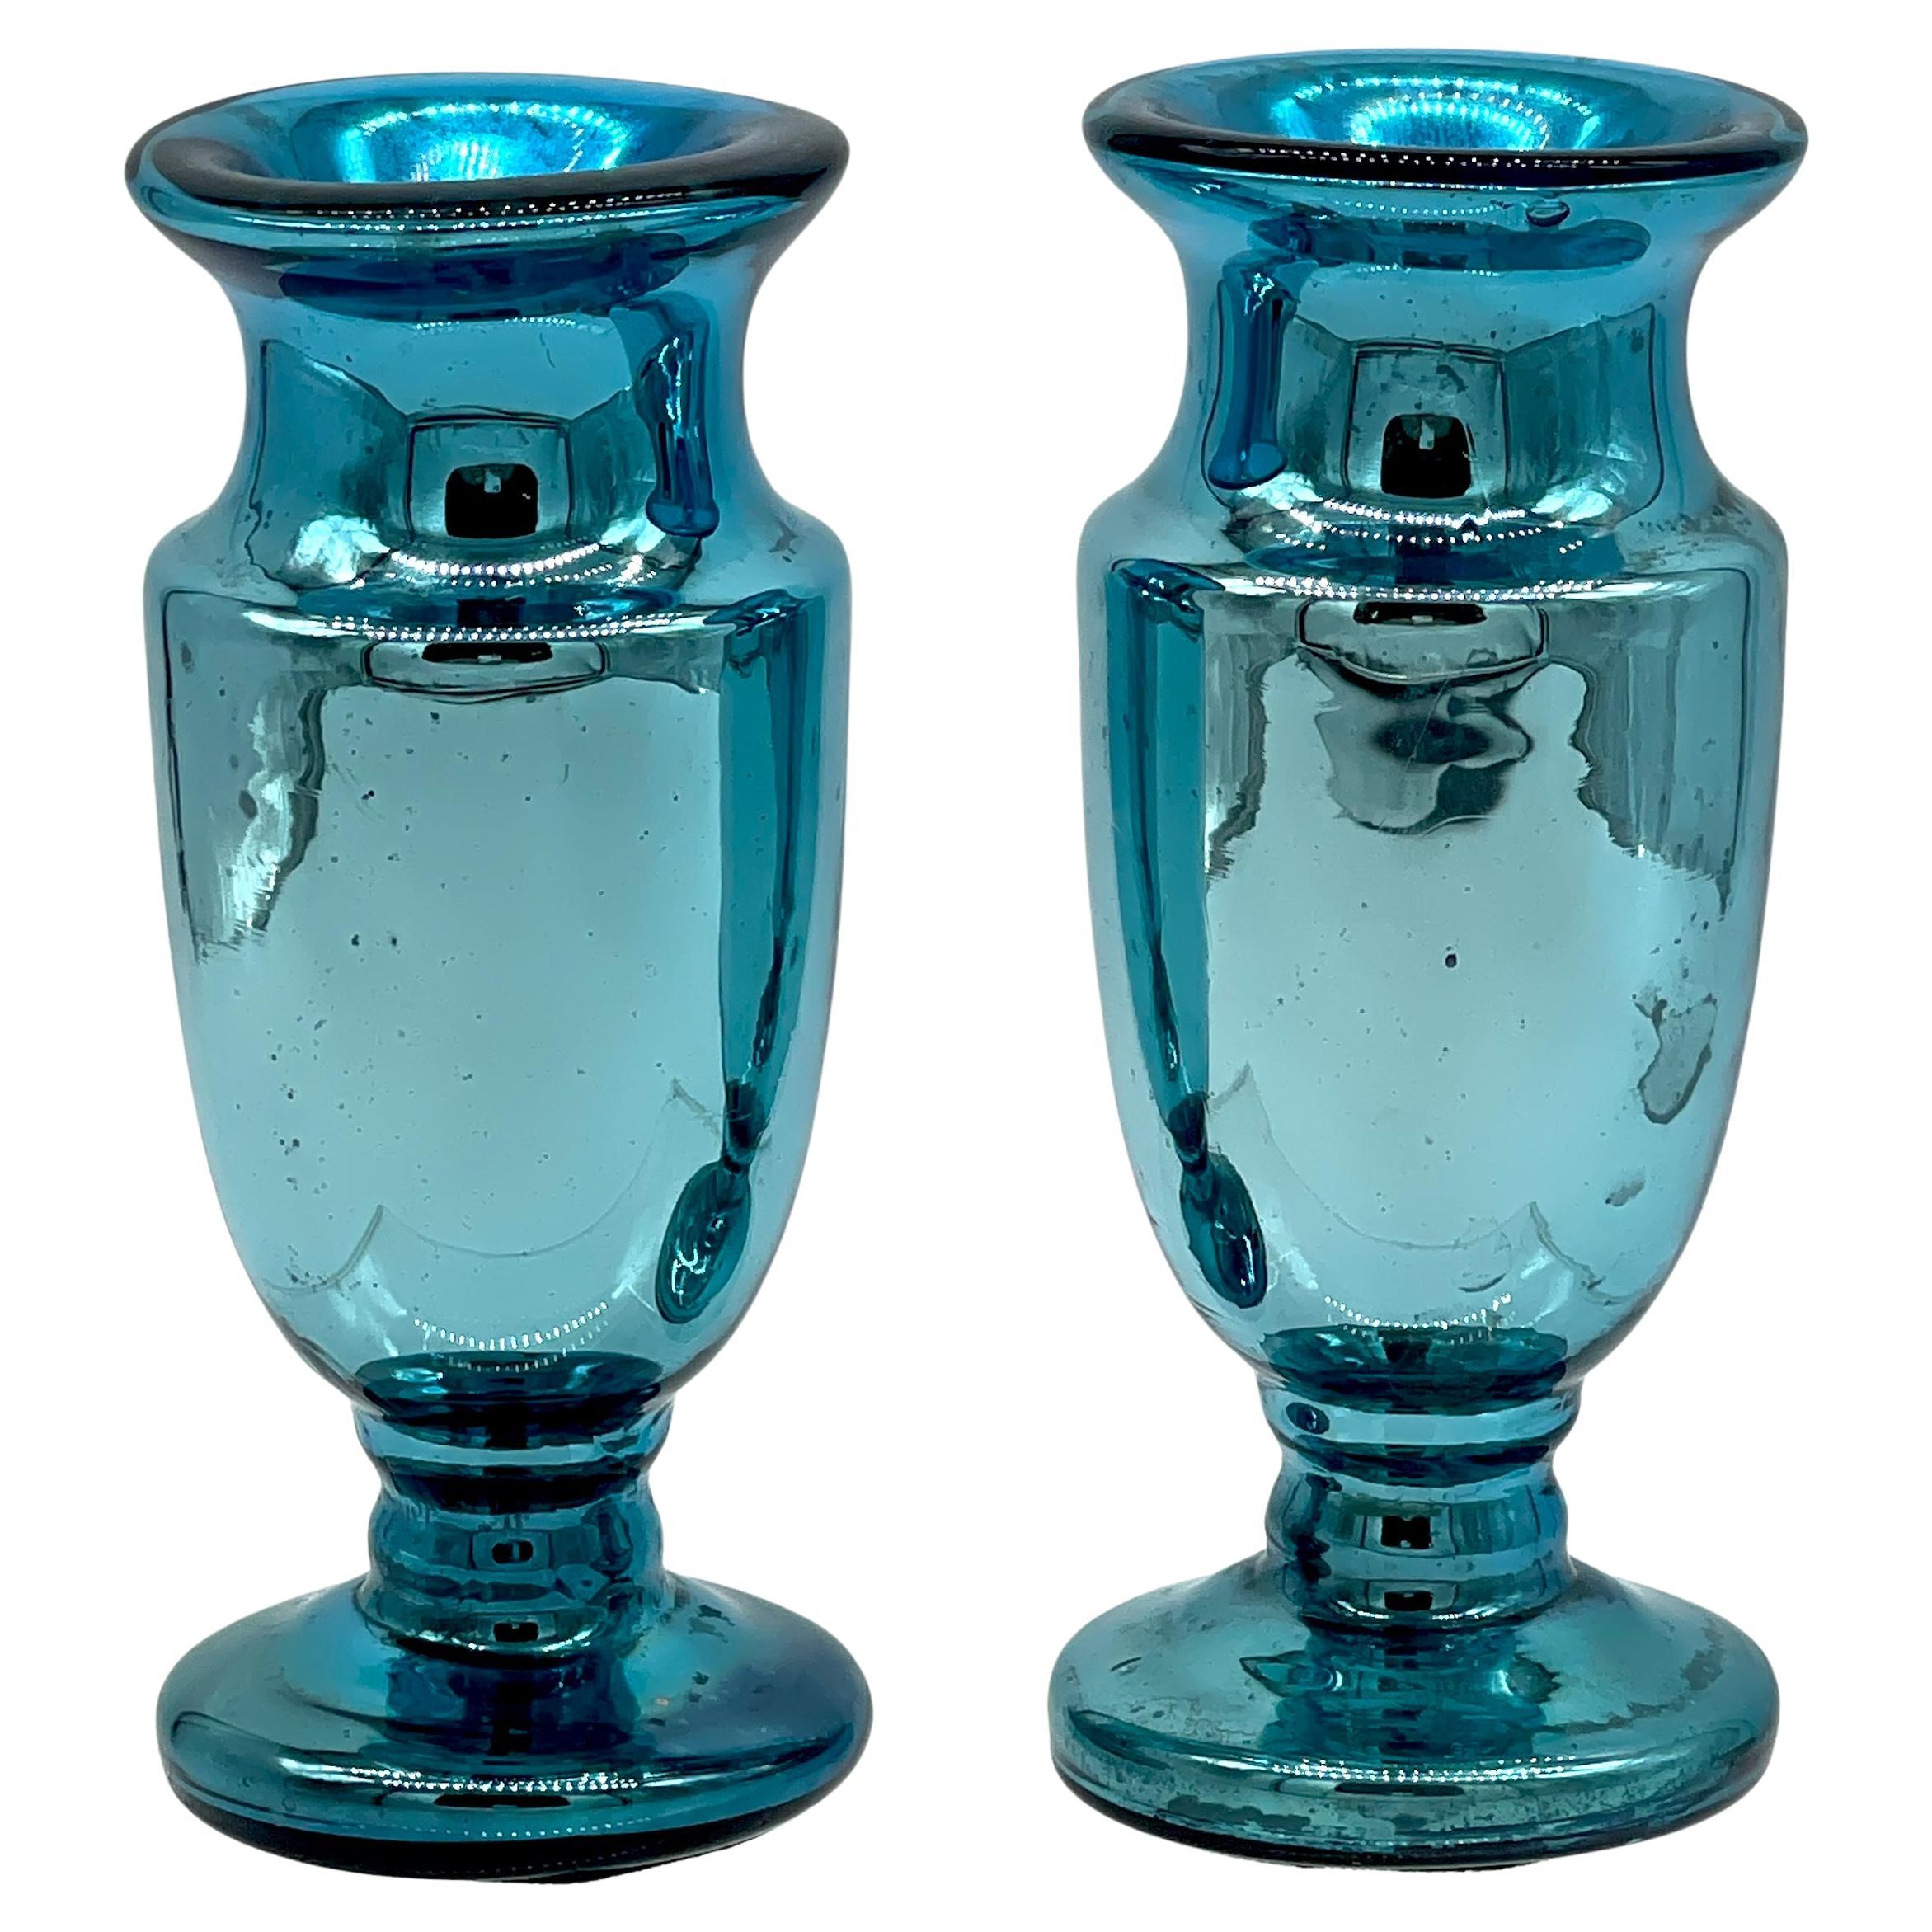 Diminutive Paire de Vases en Verre de Mercure Bleu Océan, France Circa 1900s